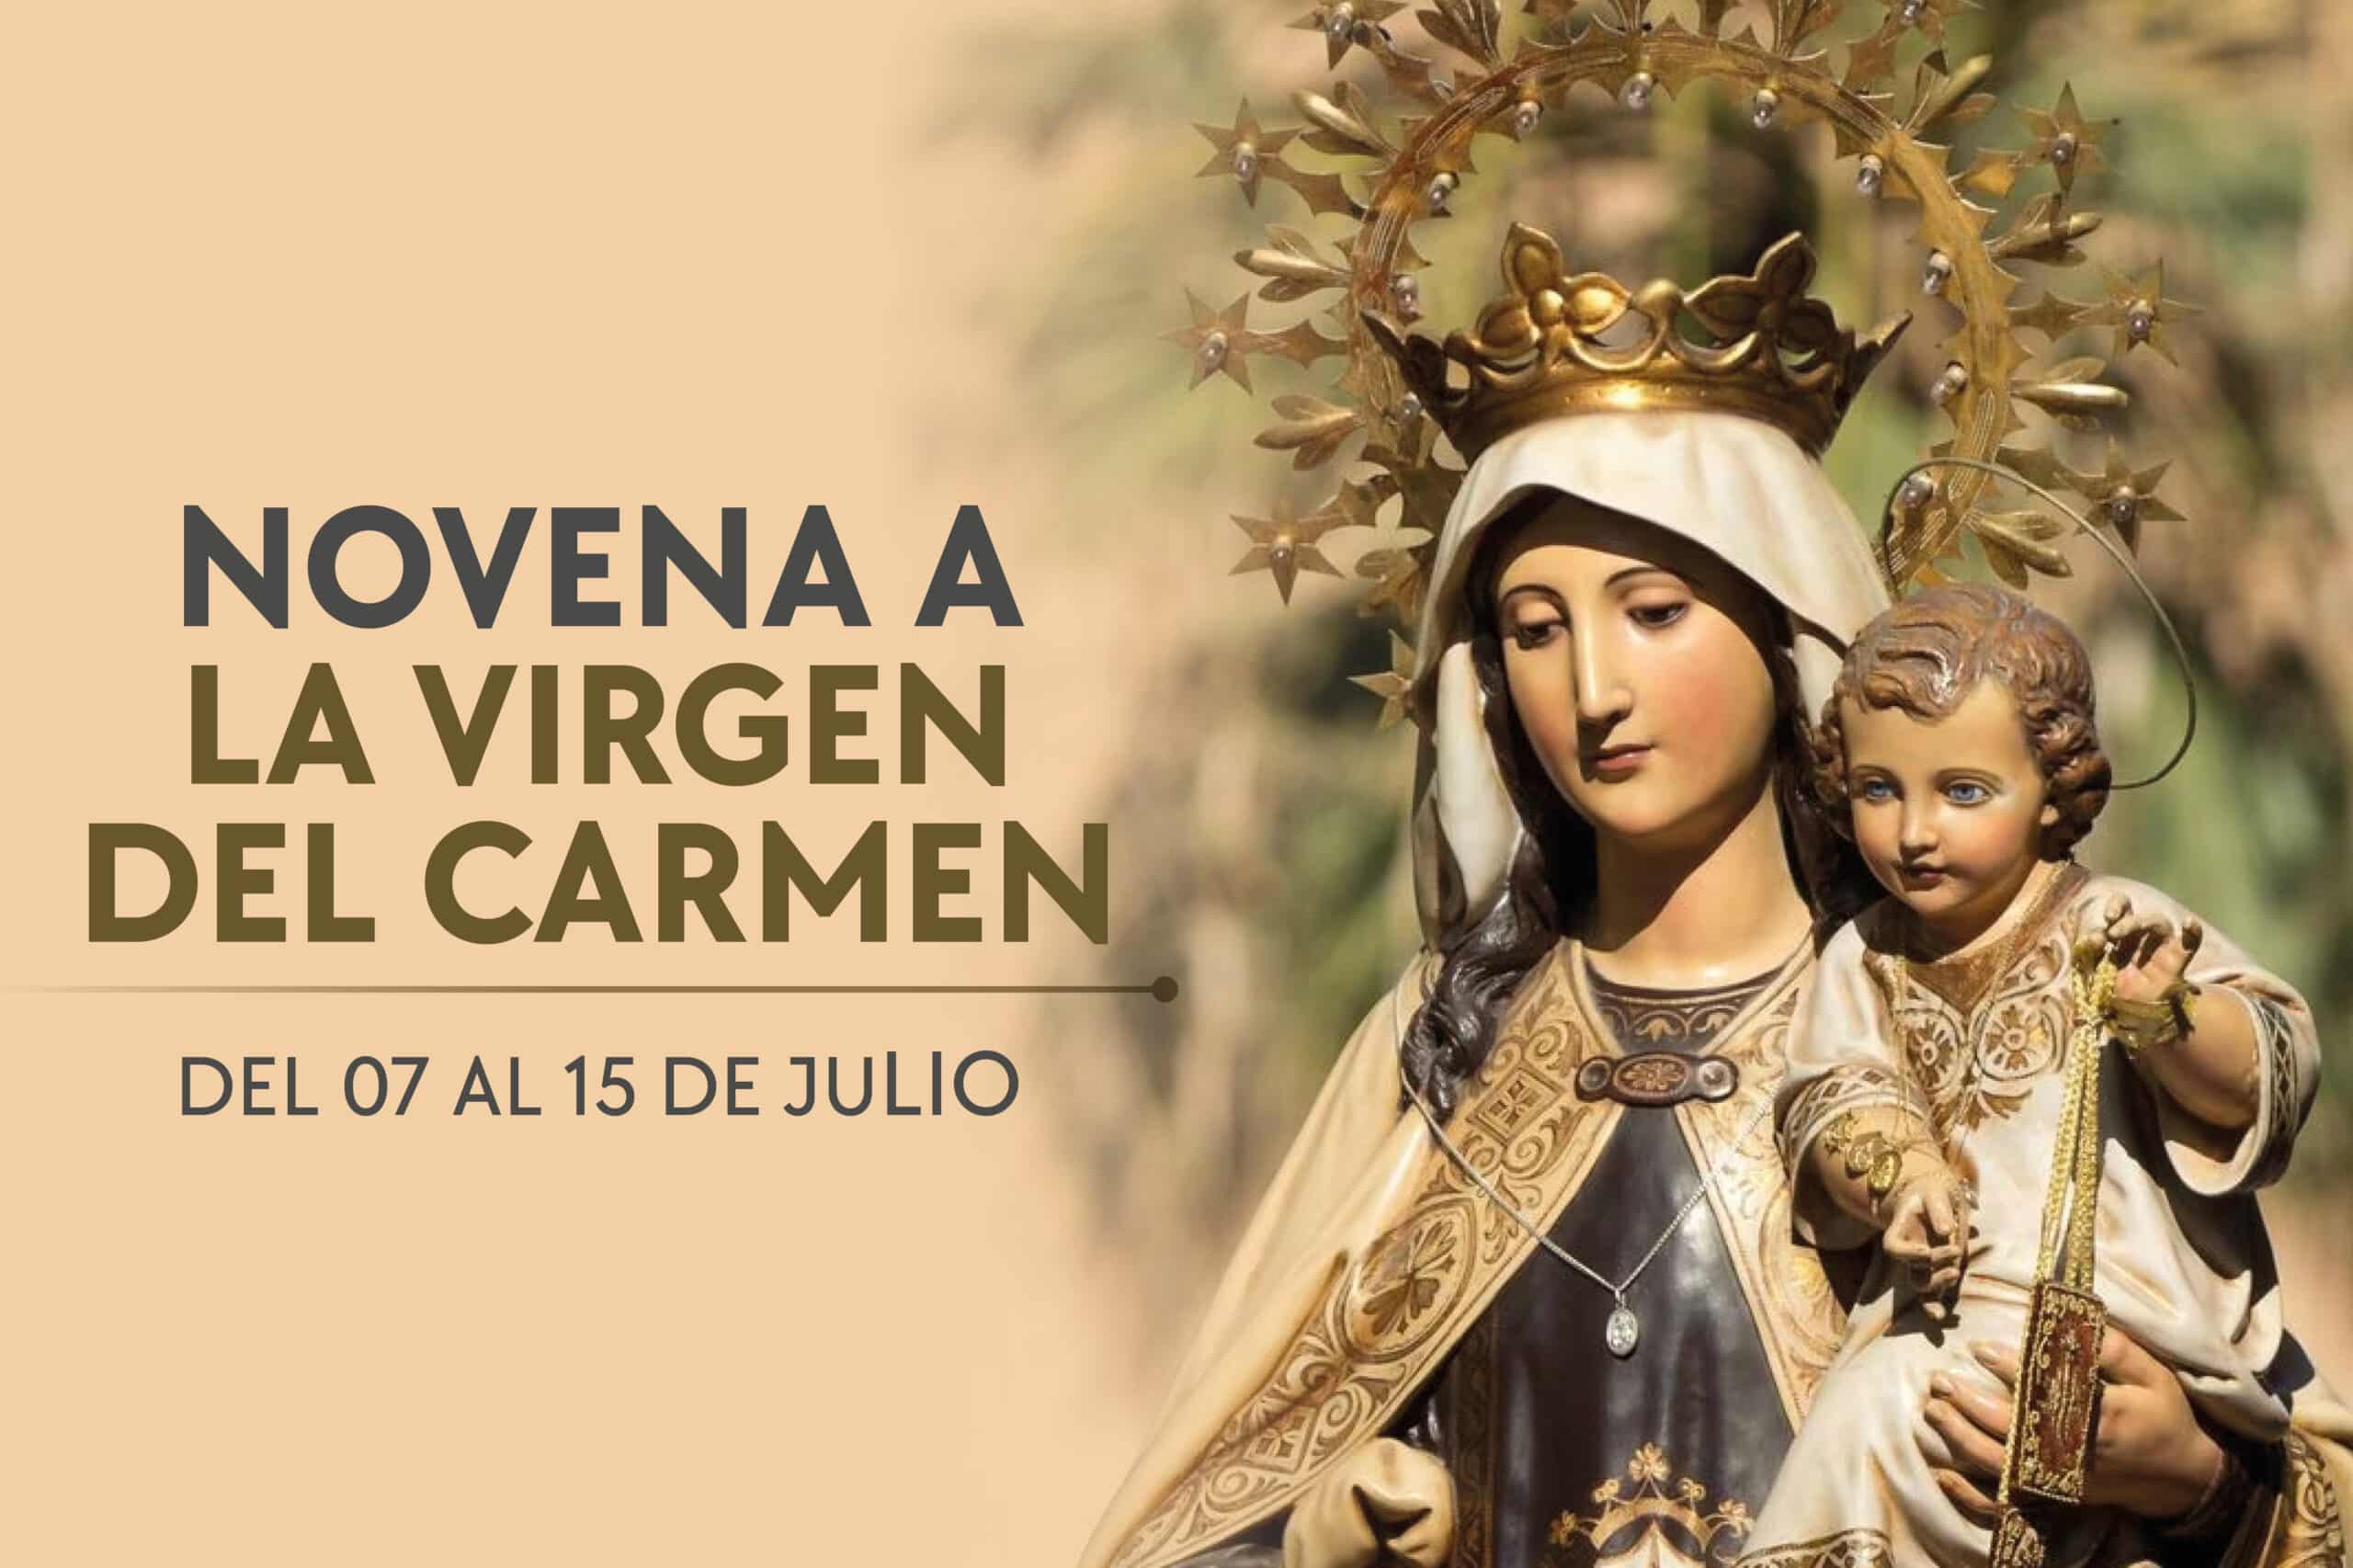 Novena a la Virgen del Carmen para pedir su ayuda